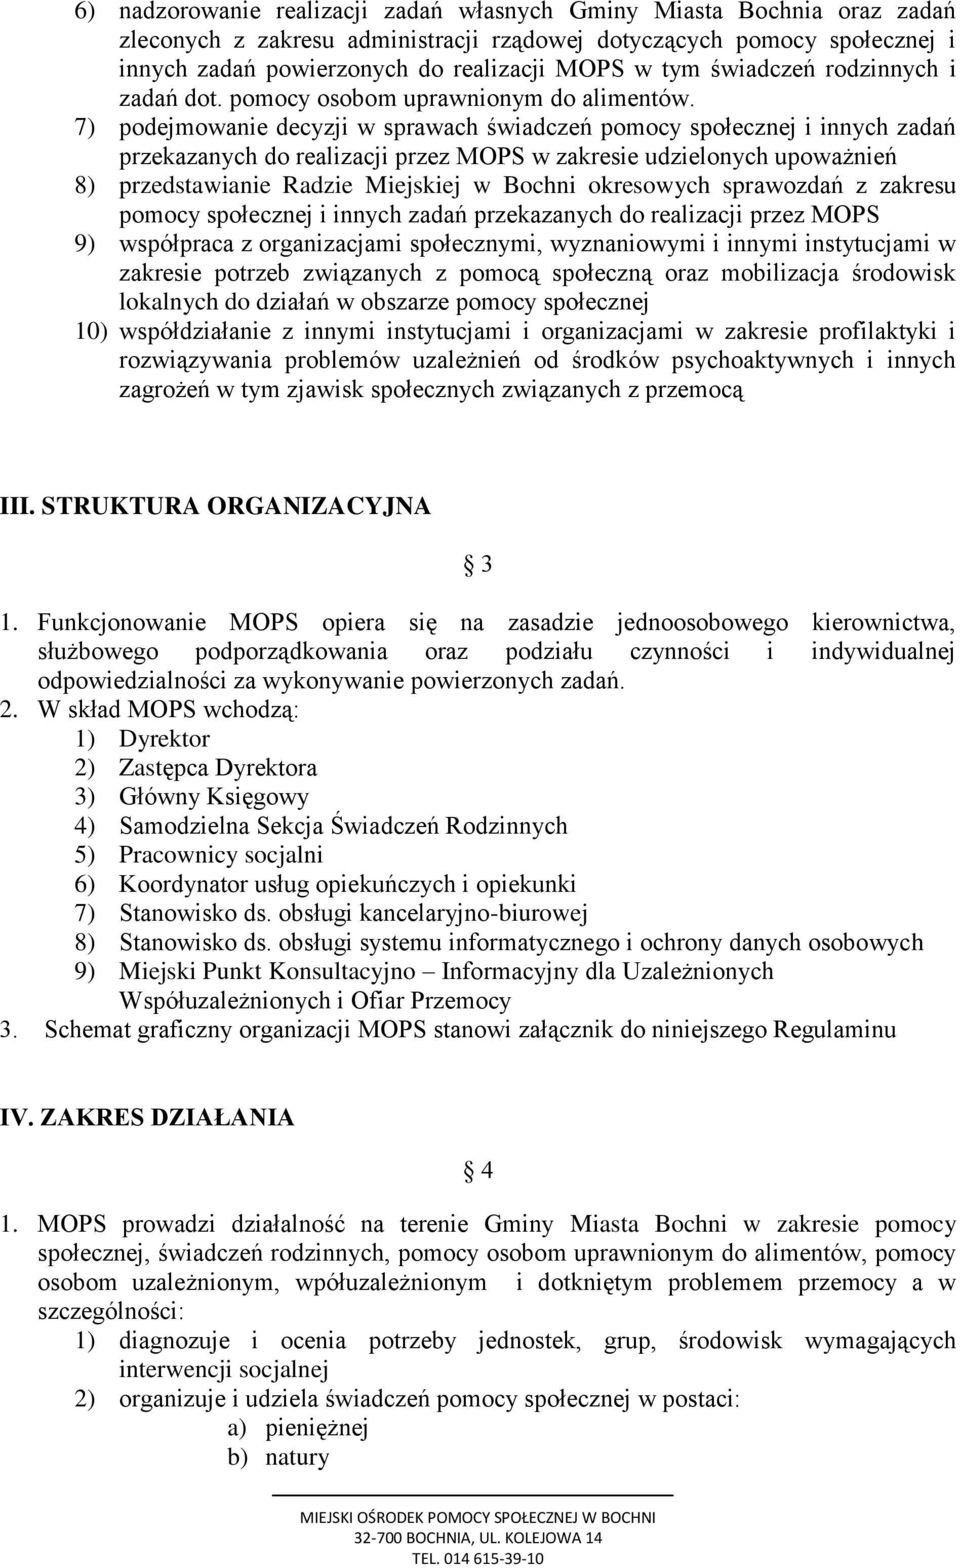 7) podejmowanie decyzji w sprawach świadczeń pomocy społecznej i innych zadań przekazanych do realizacji przez MOPS w zakresie udzielonych upoważnień 8) przedstawianie Radzie Miejskiej w Bochni